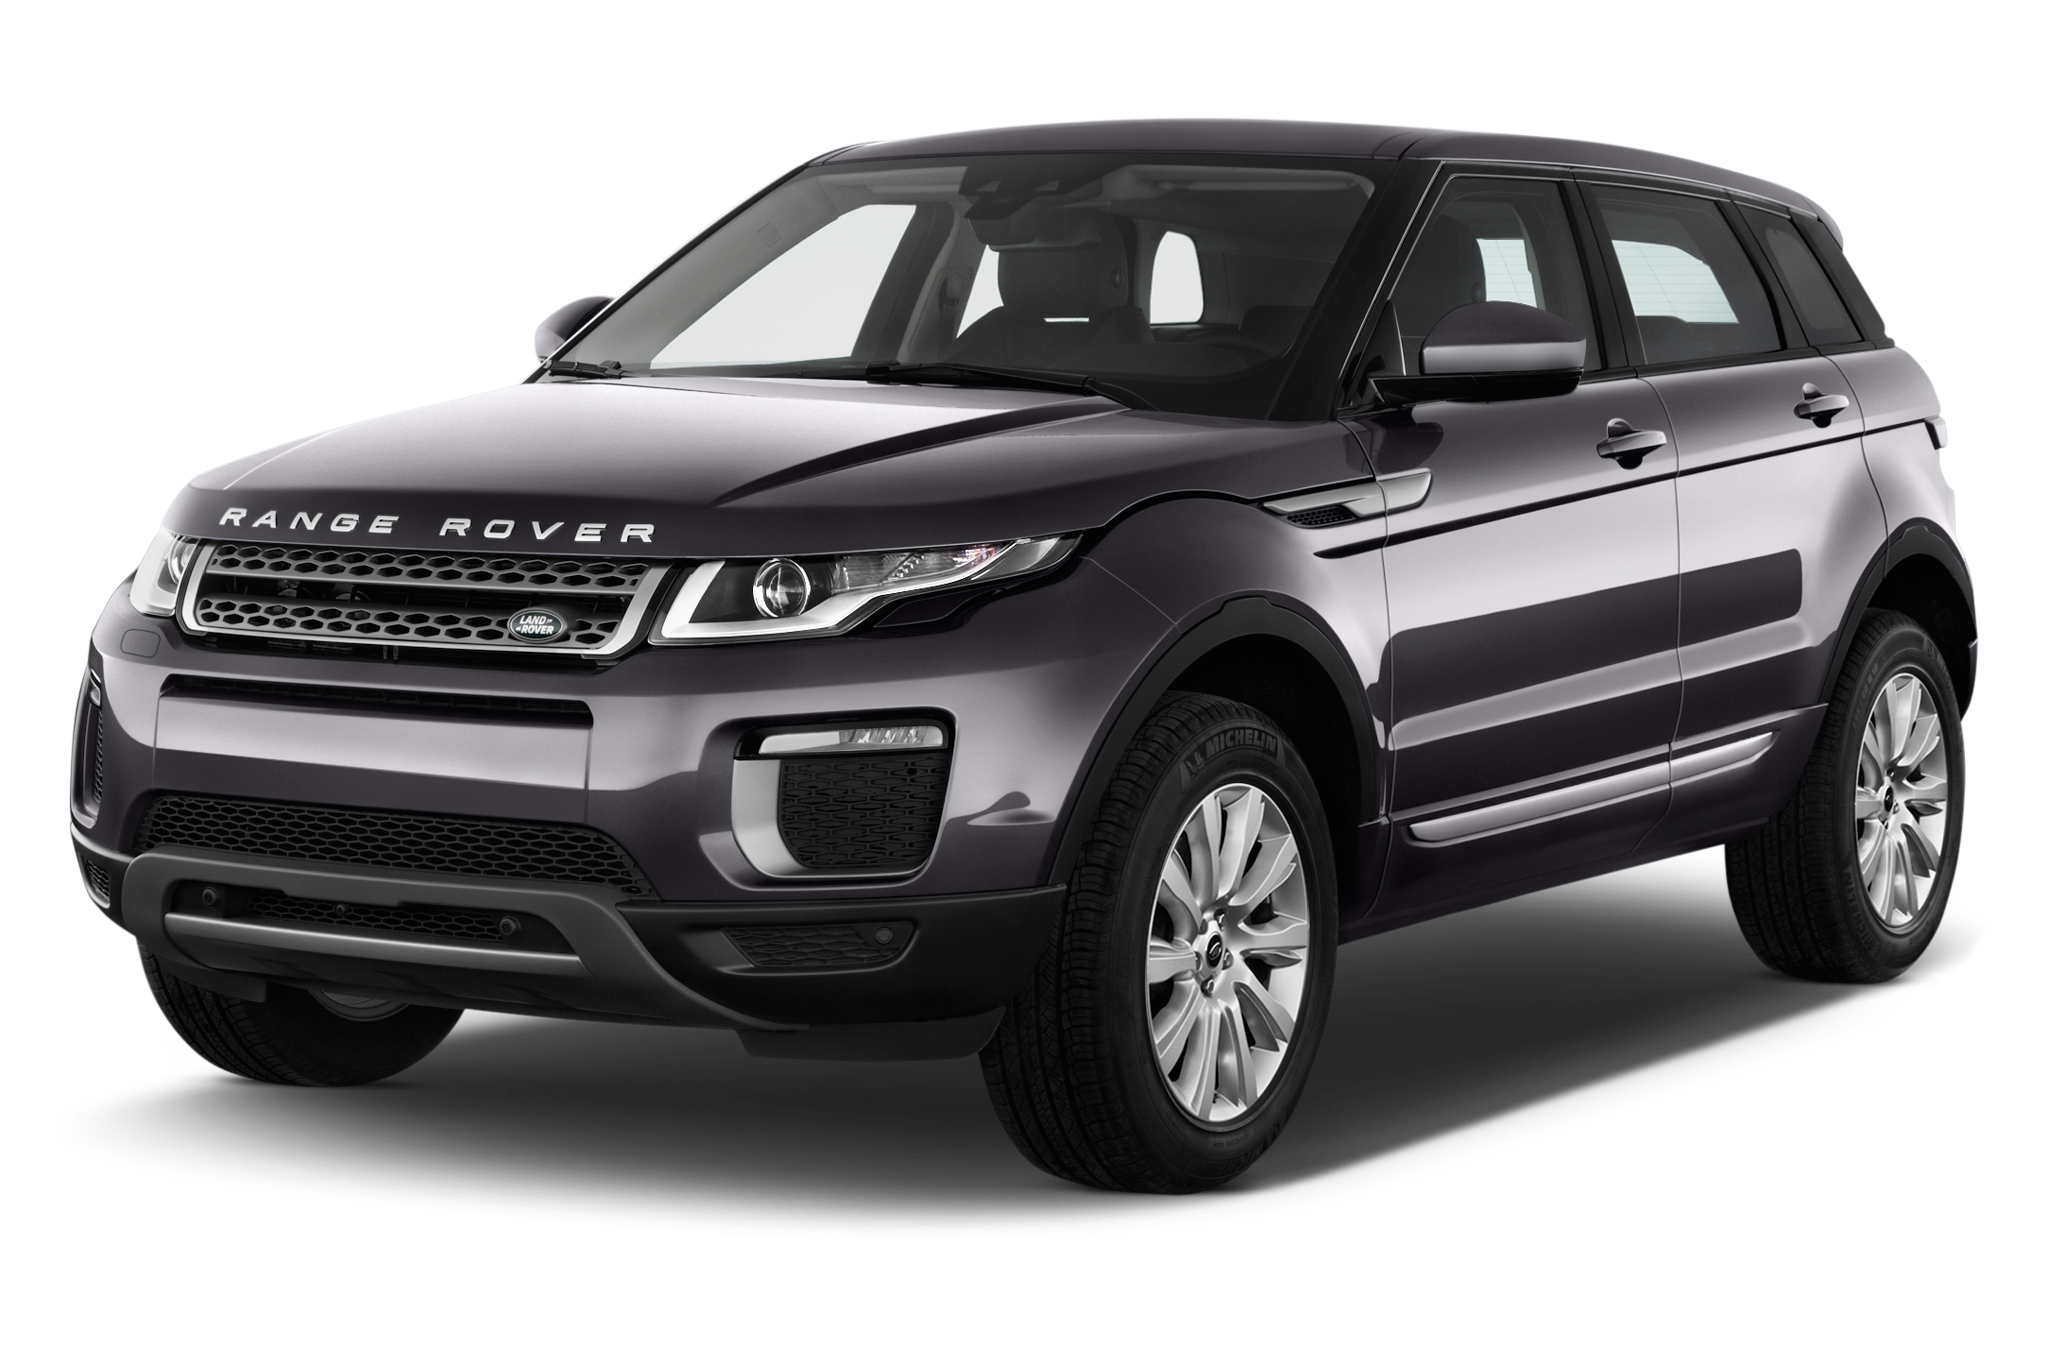 2016 Land Rover Range Rover Evoque Overview MSN Autos